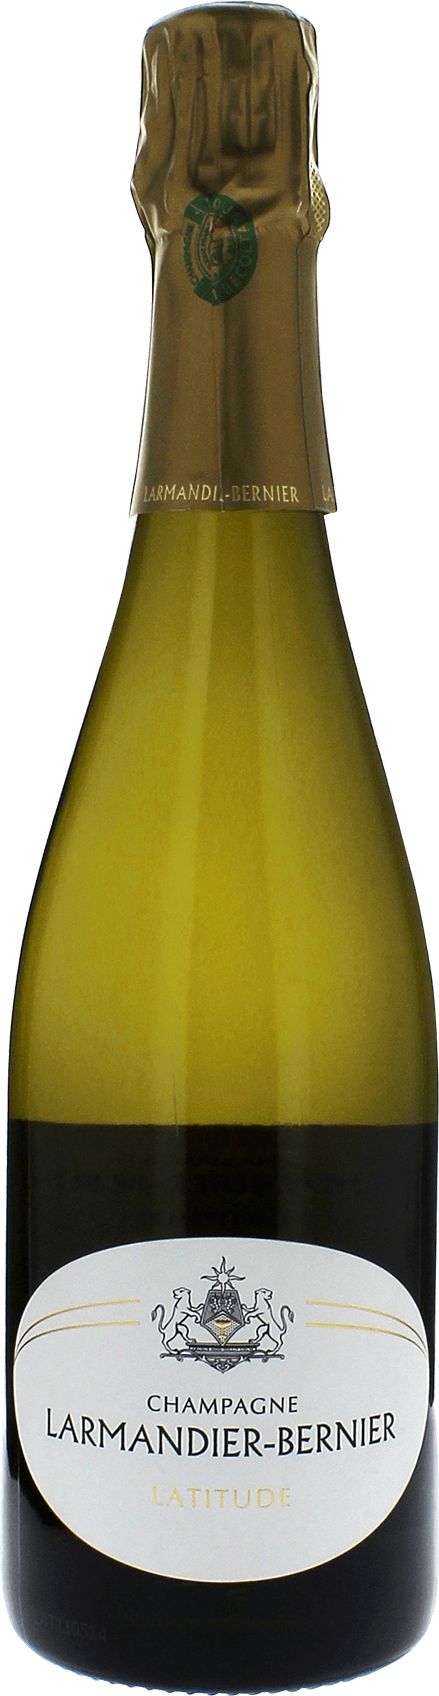 Larmandier-bernier latitude blanc de blancs extra brut  LARMANDIER BERNIER, Champagne